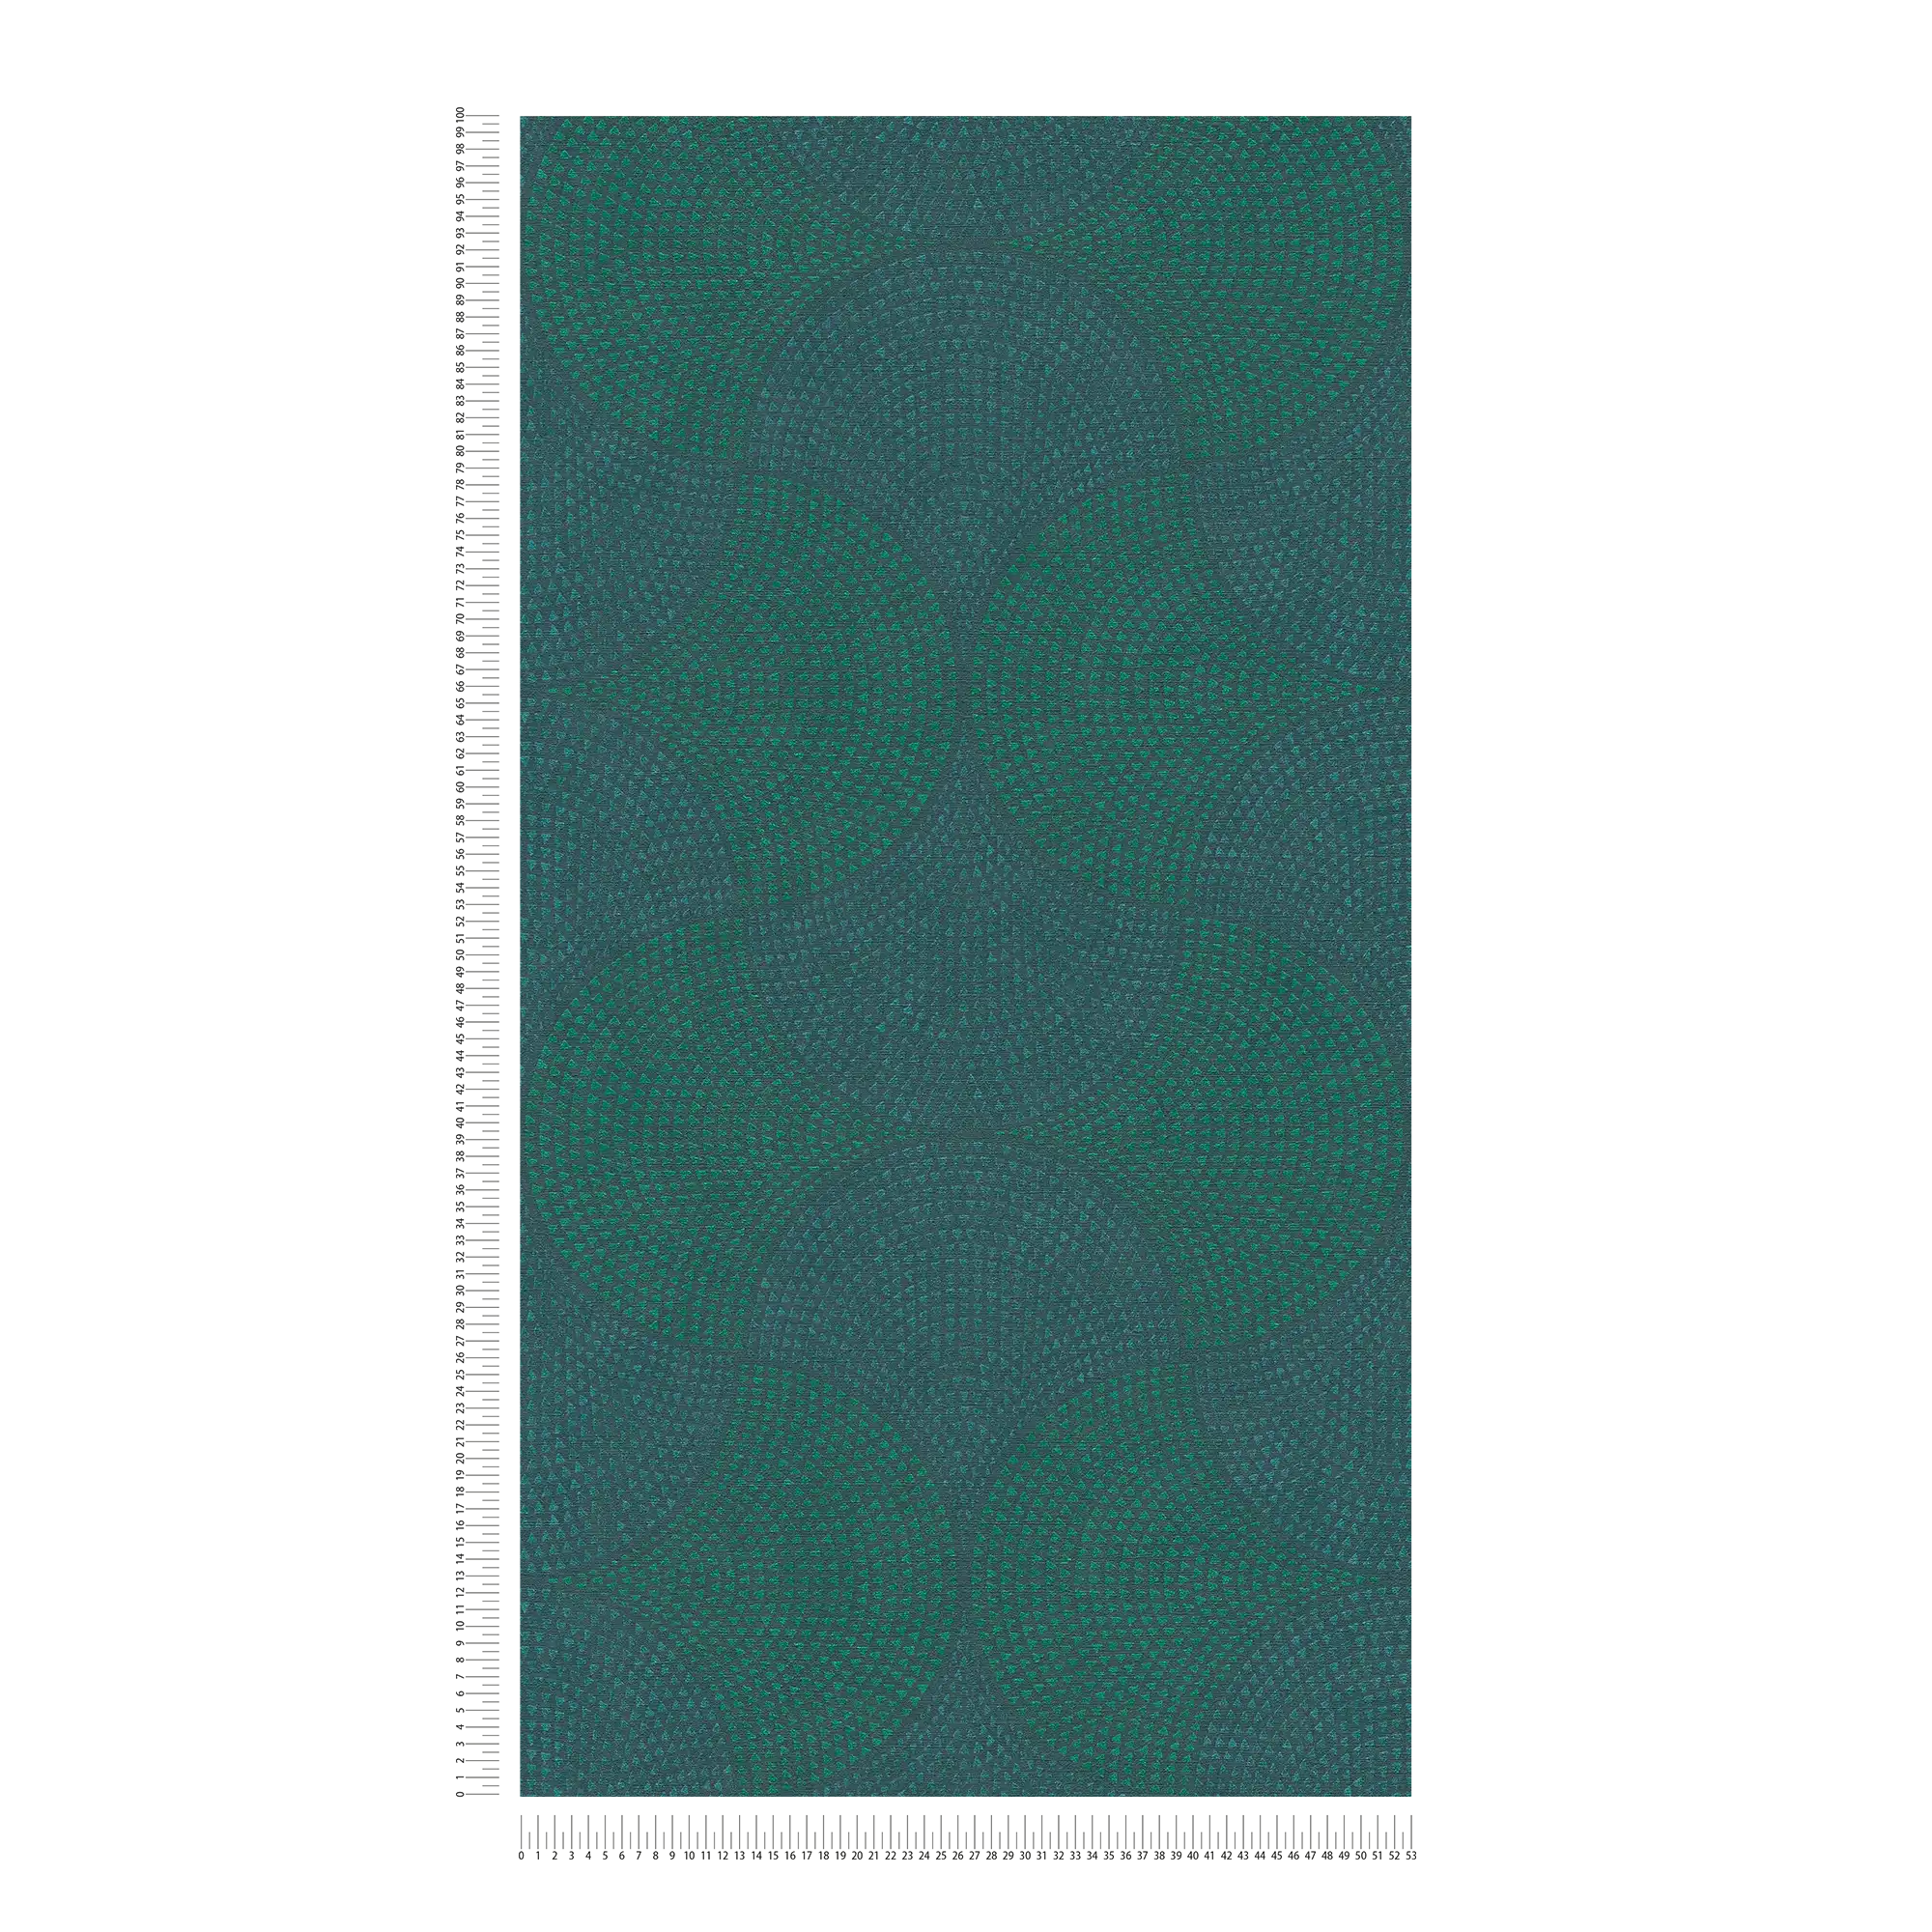             Papier peint intissé Design métallique avec motif mosaïque - bleu, vert, métallique
        